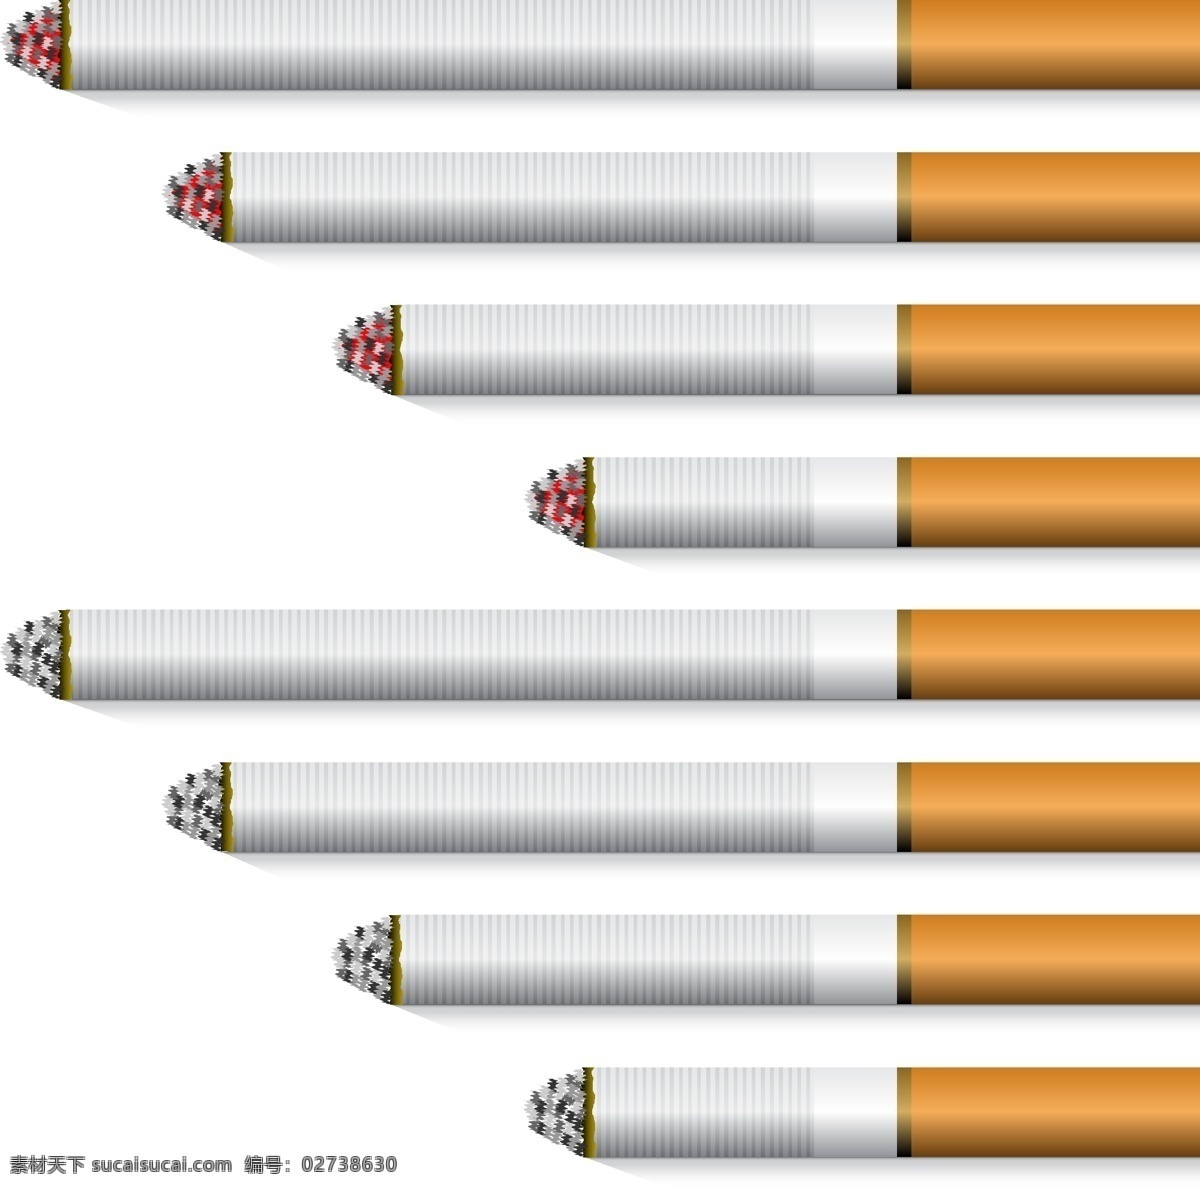 香烟 矢量 素材图片 生活百科 吸烟 烟草 模板下载 香烟矢量素材 矢量图 日常生活